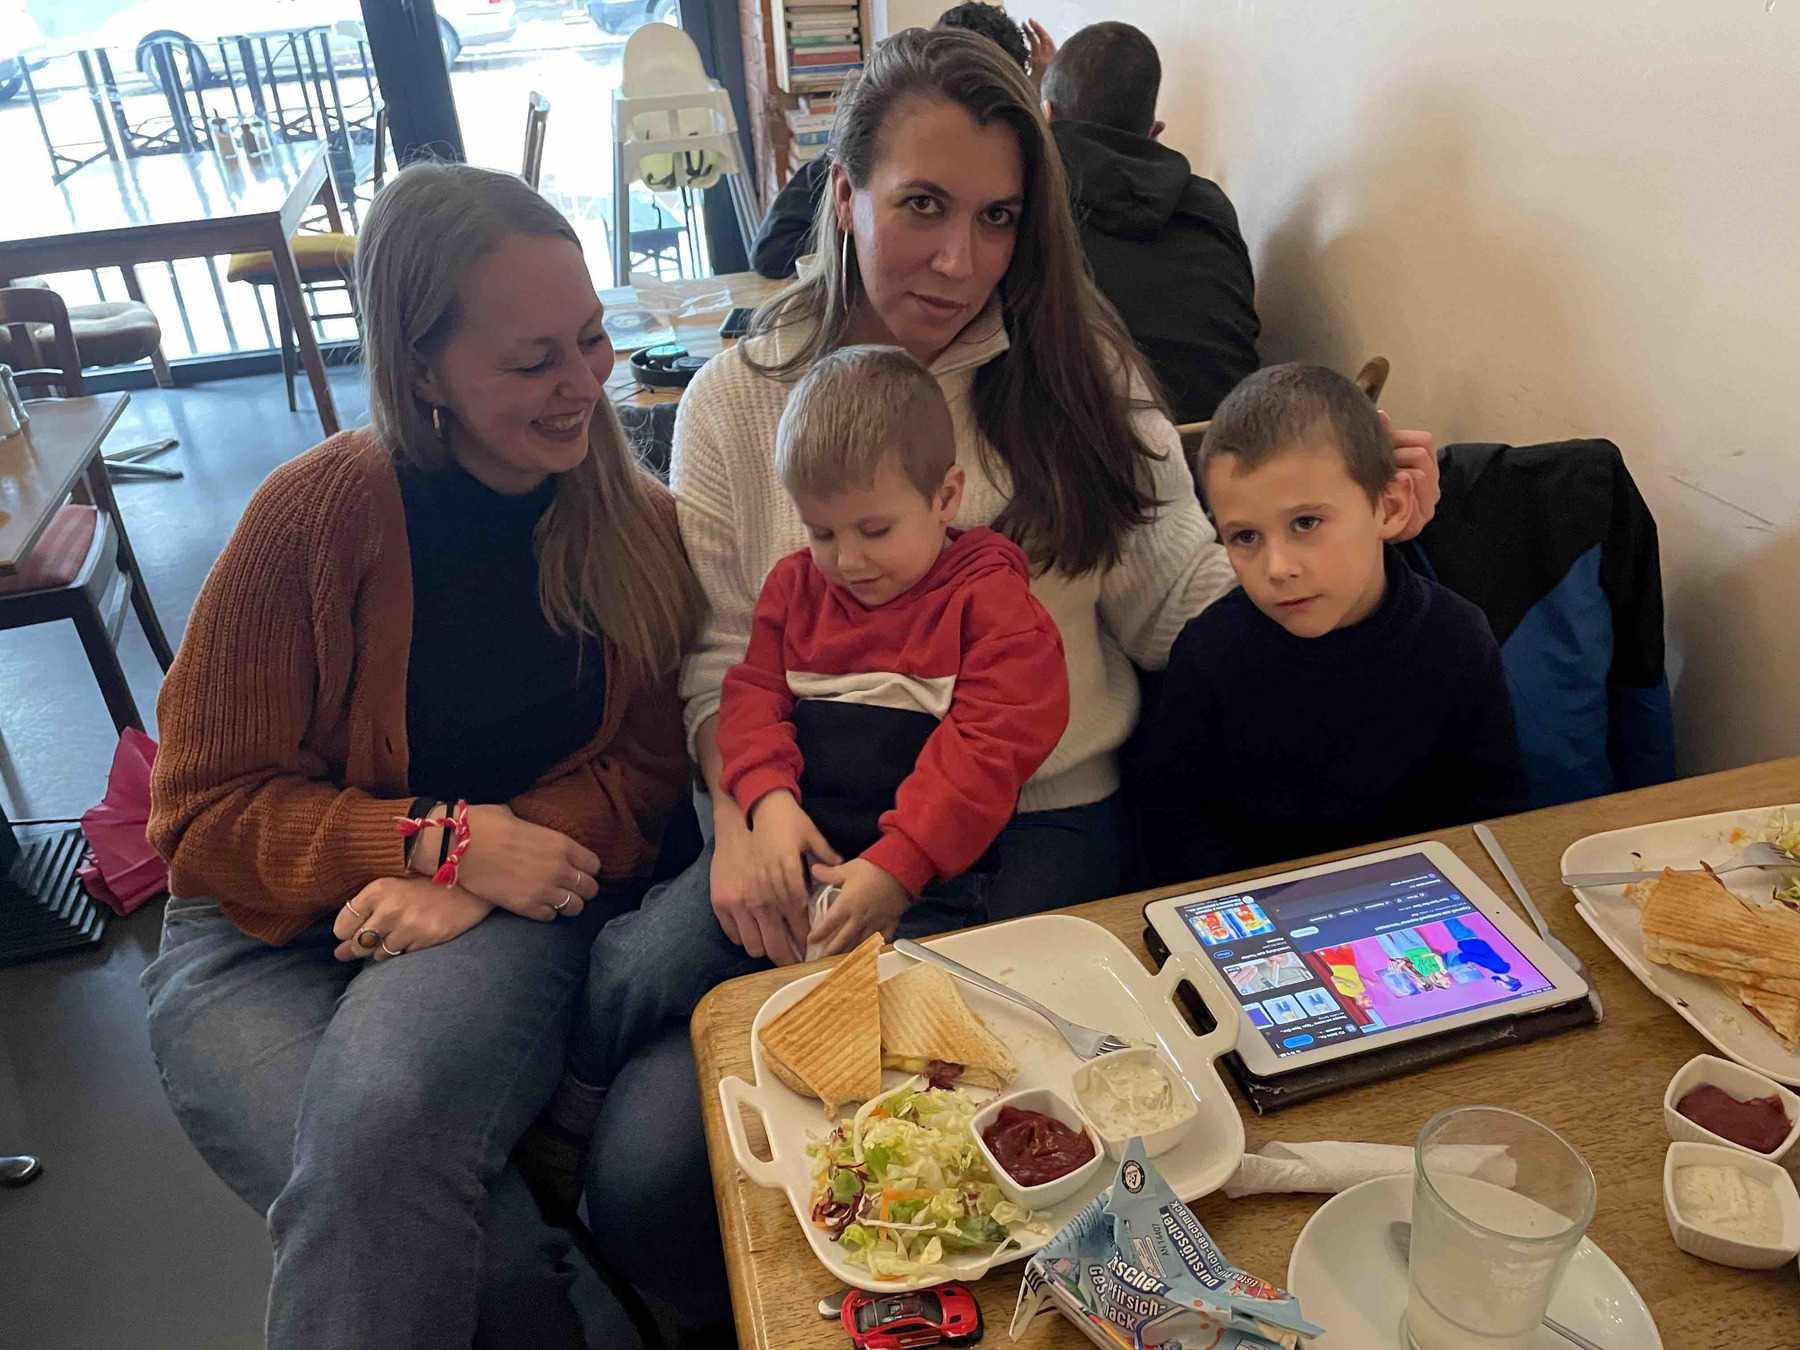 Maren, Hanna und ihre beiden Söhne sitzen an einem Tisch, auf dem Teller mit Essen und ein Glas steht. Daneben liegt ein Tablet.